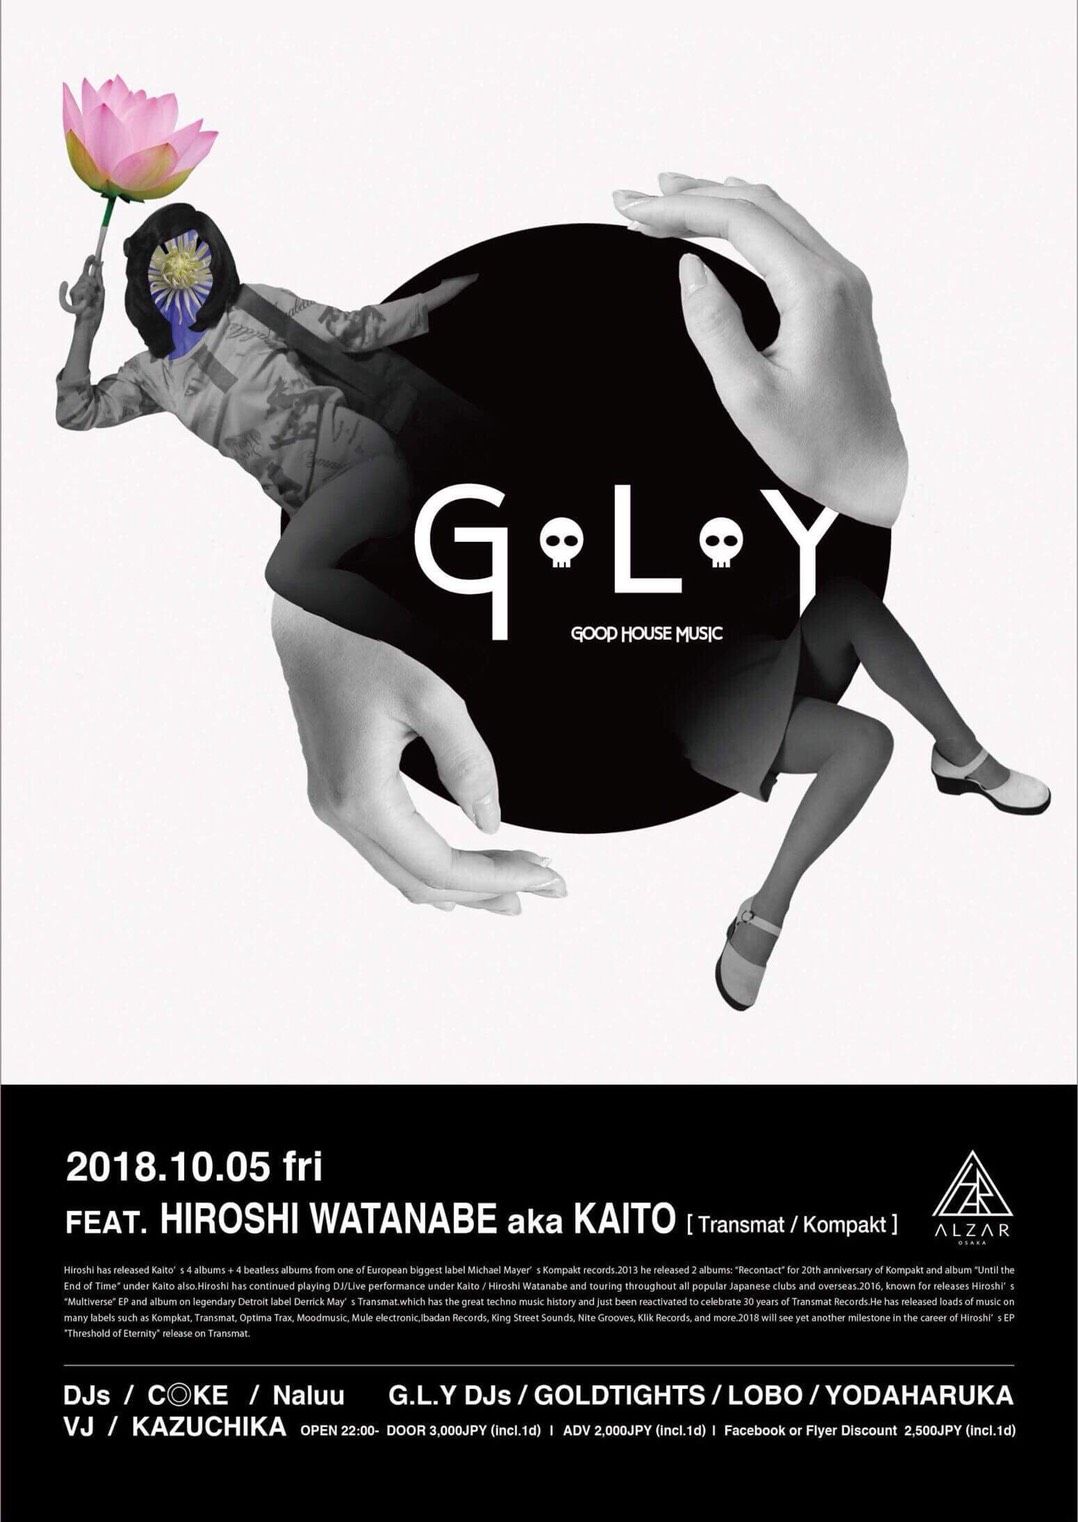 Alzar feat 「G.L.Y」 Guest HIROSHI WATANBE a.k.a KAITO